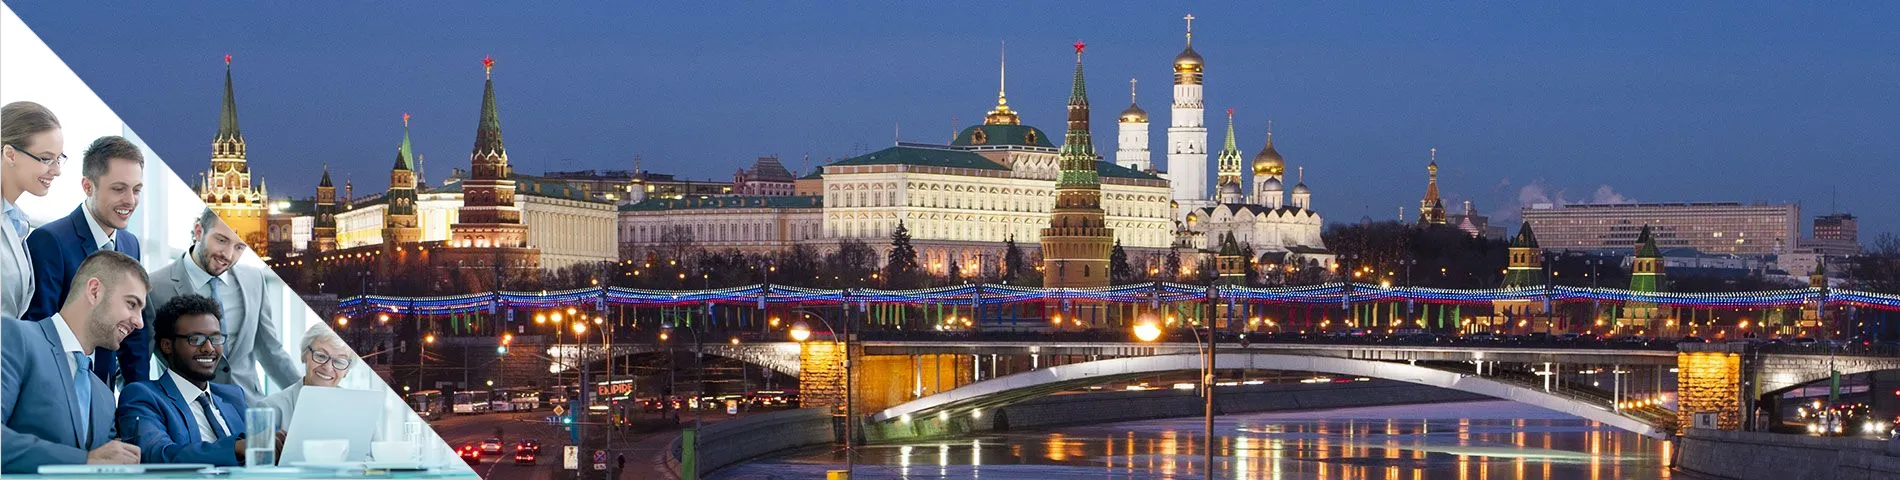 موسكو - مجموعة الأعمال